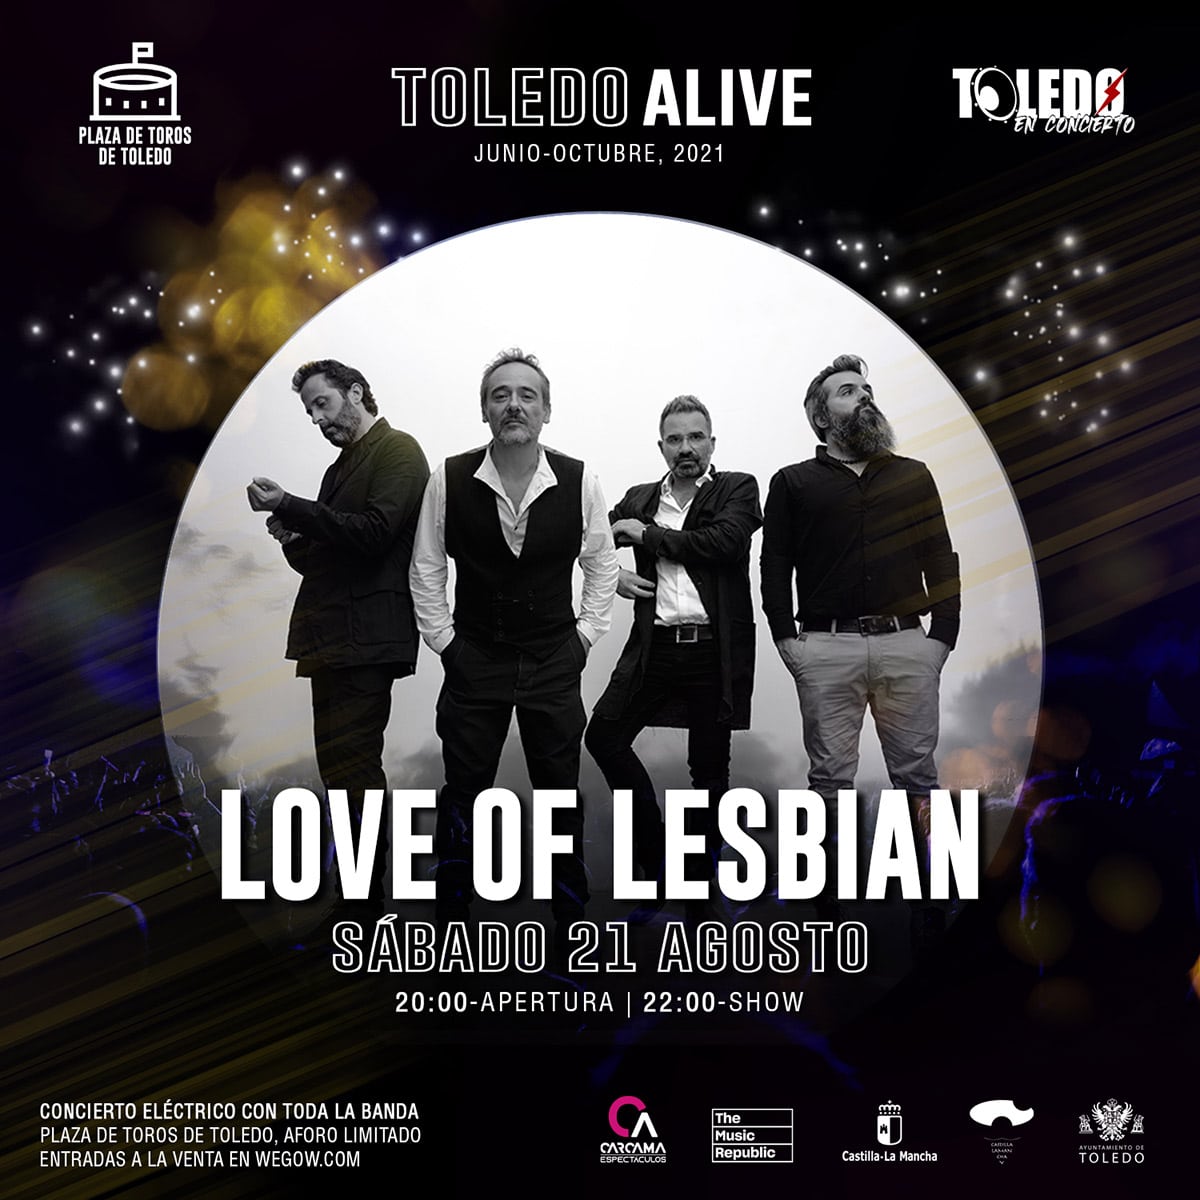 concierto-love-of-lesbian-toledo-alive